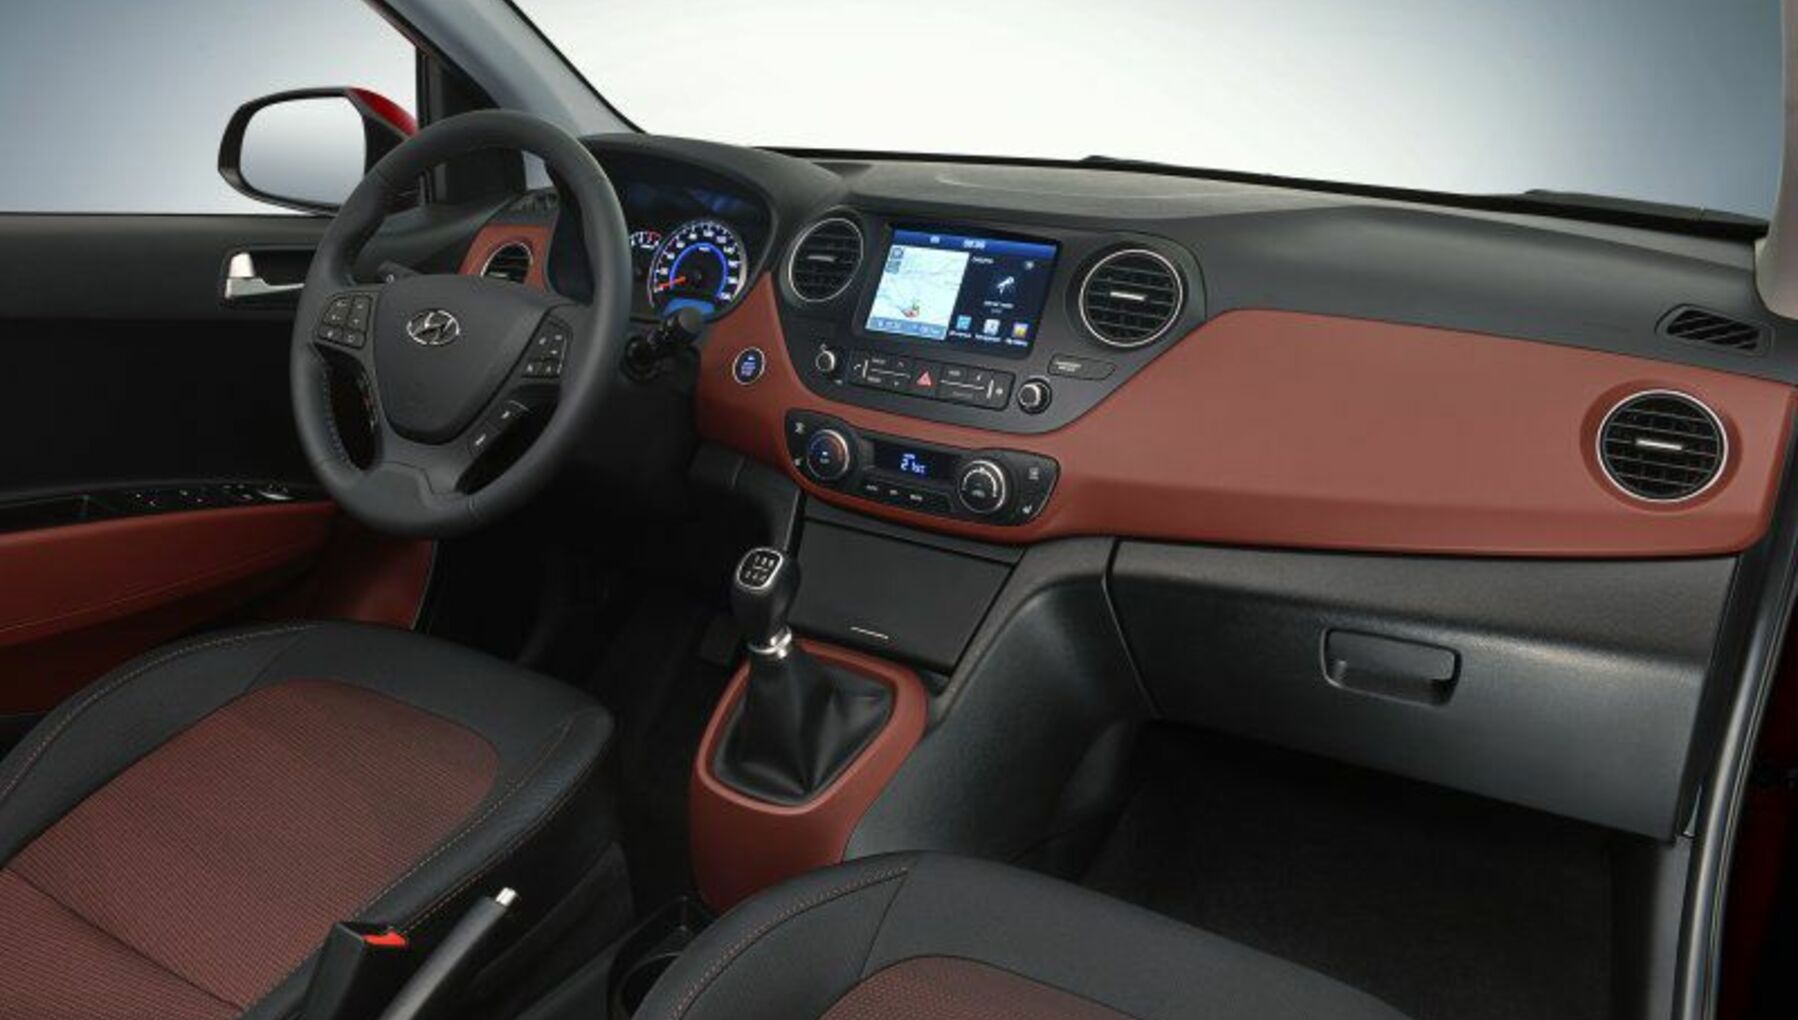 Hyundai i10 (2008 - 2010) used car review | Car review | RAC Drive